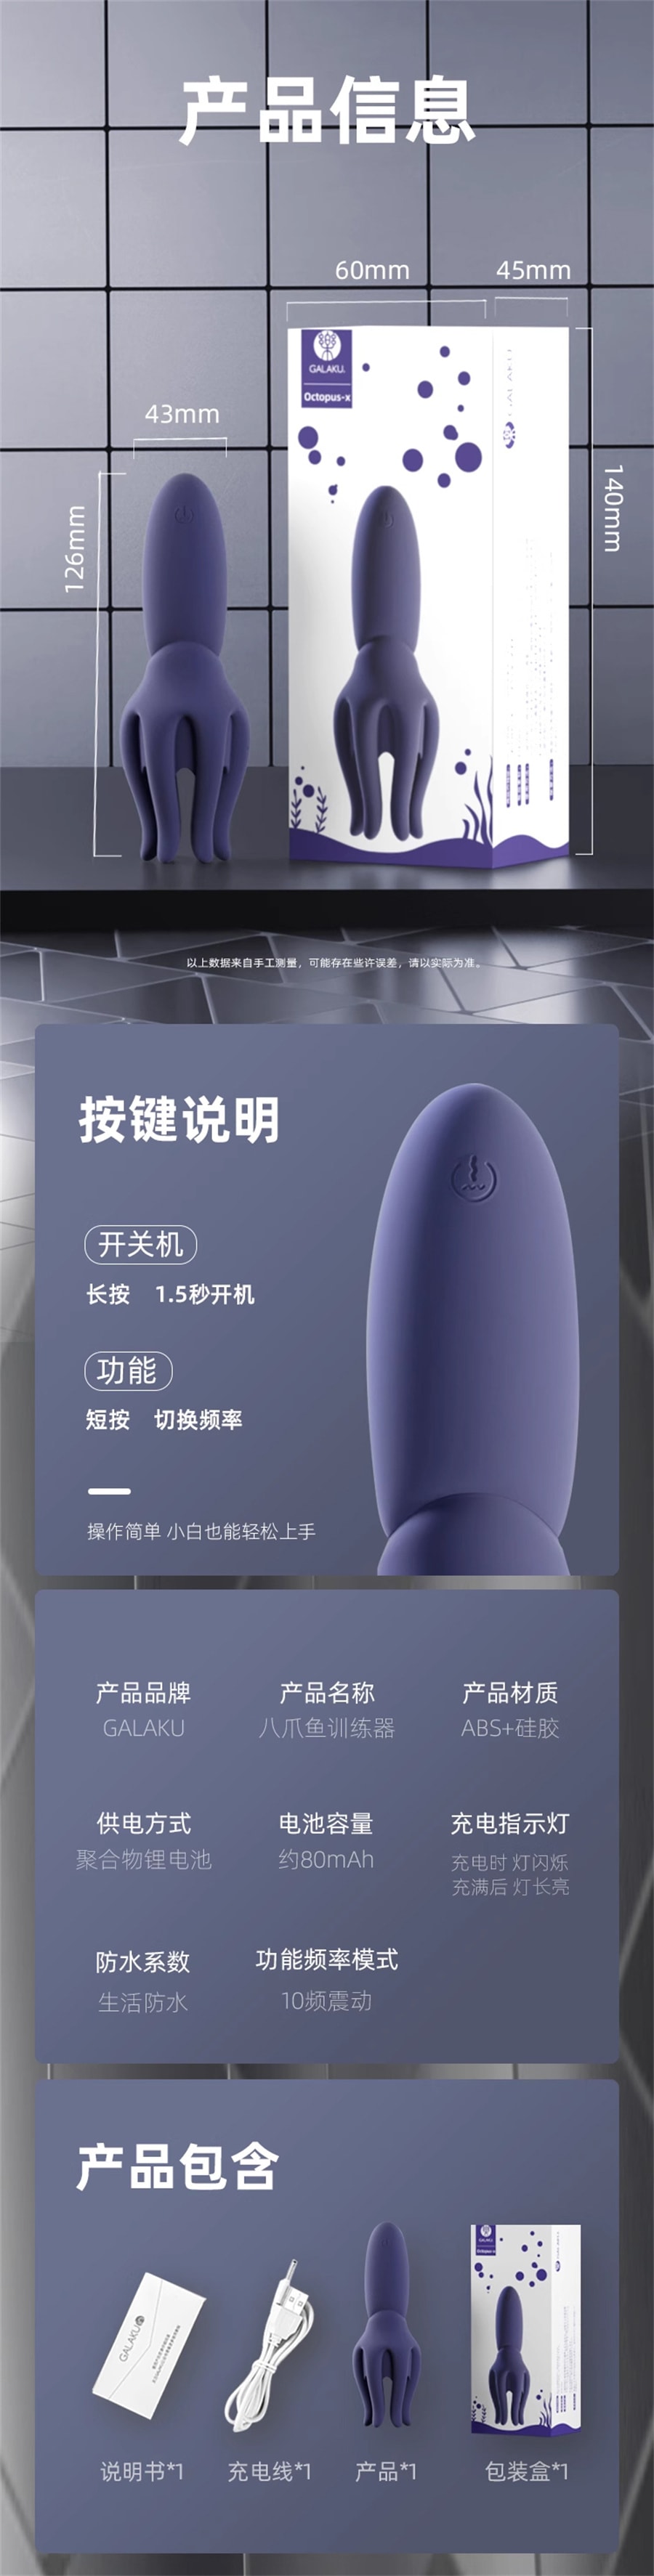 【中国直邮】 GALAKU 情趣sm挑逗男人玩具自慰器共用男用品夫妻床上助爱性工具成人道具